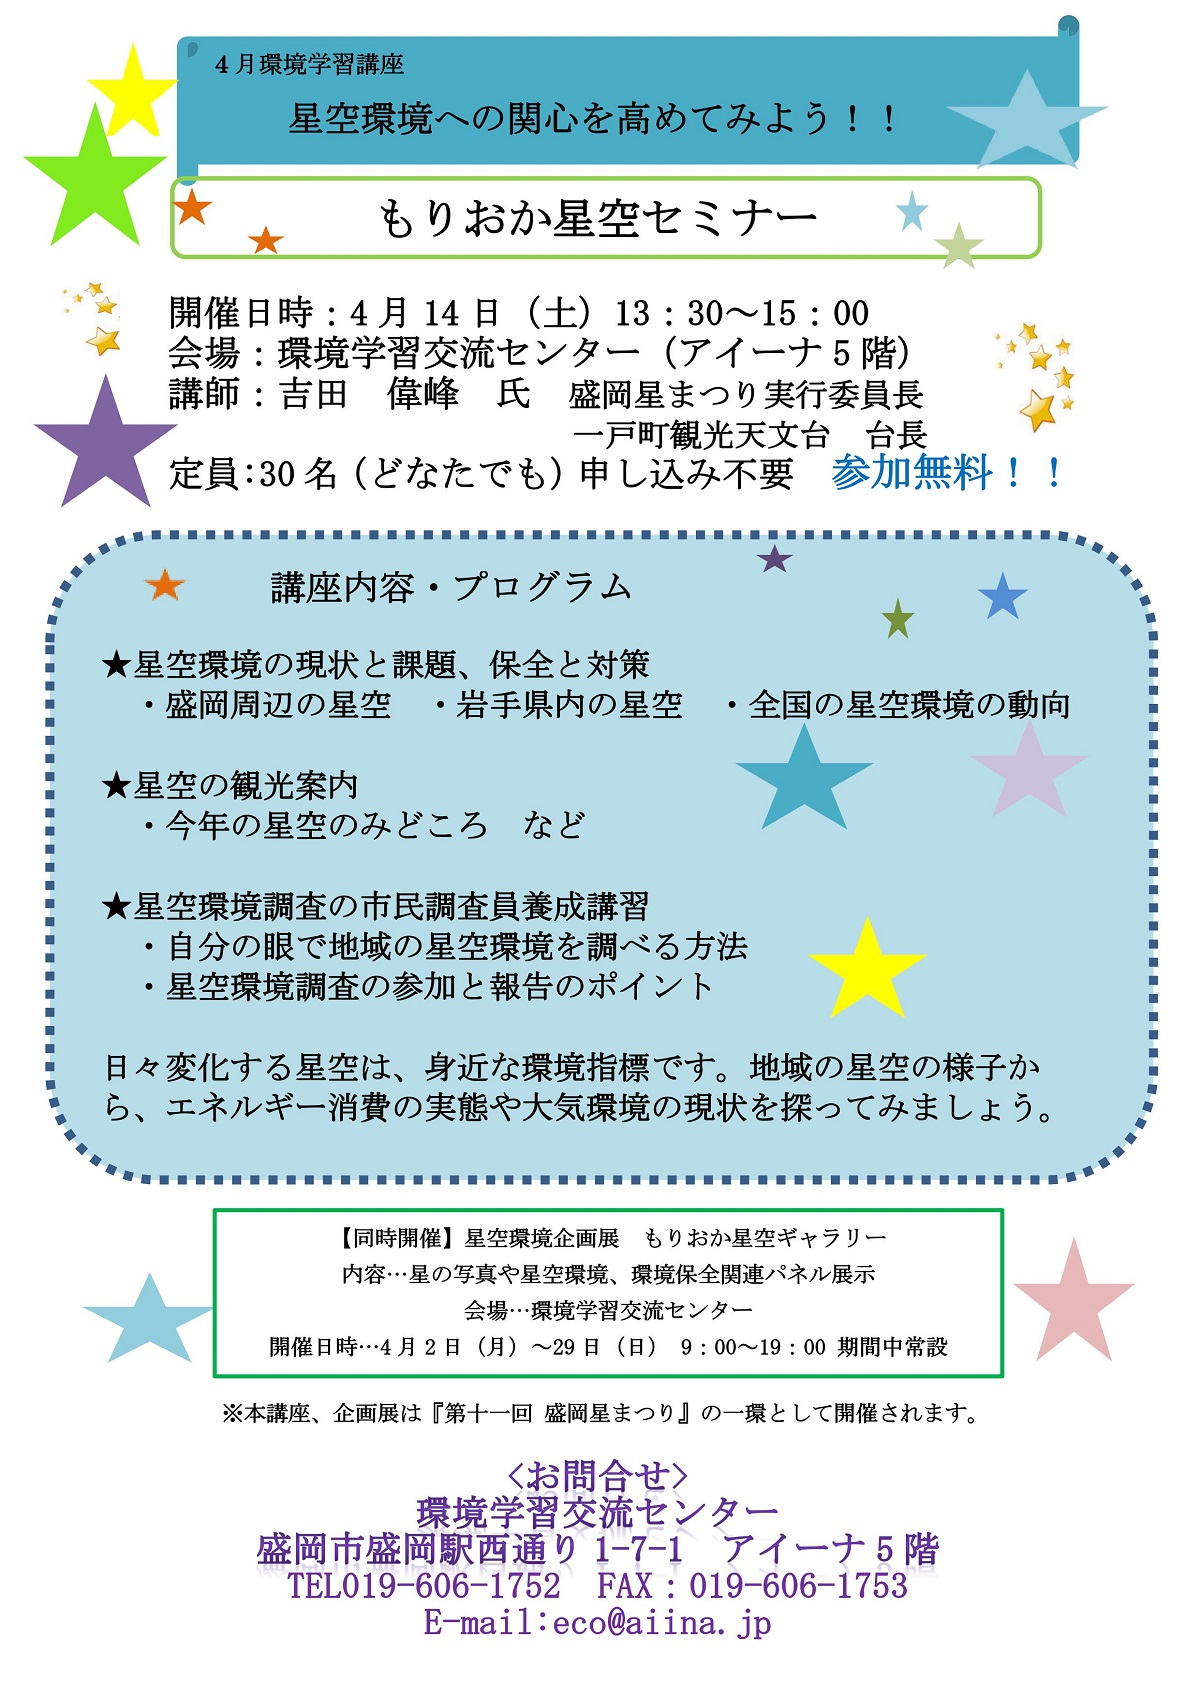 http://blog.iwate-eco.jp/2018/03/23/0002.jpg